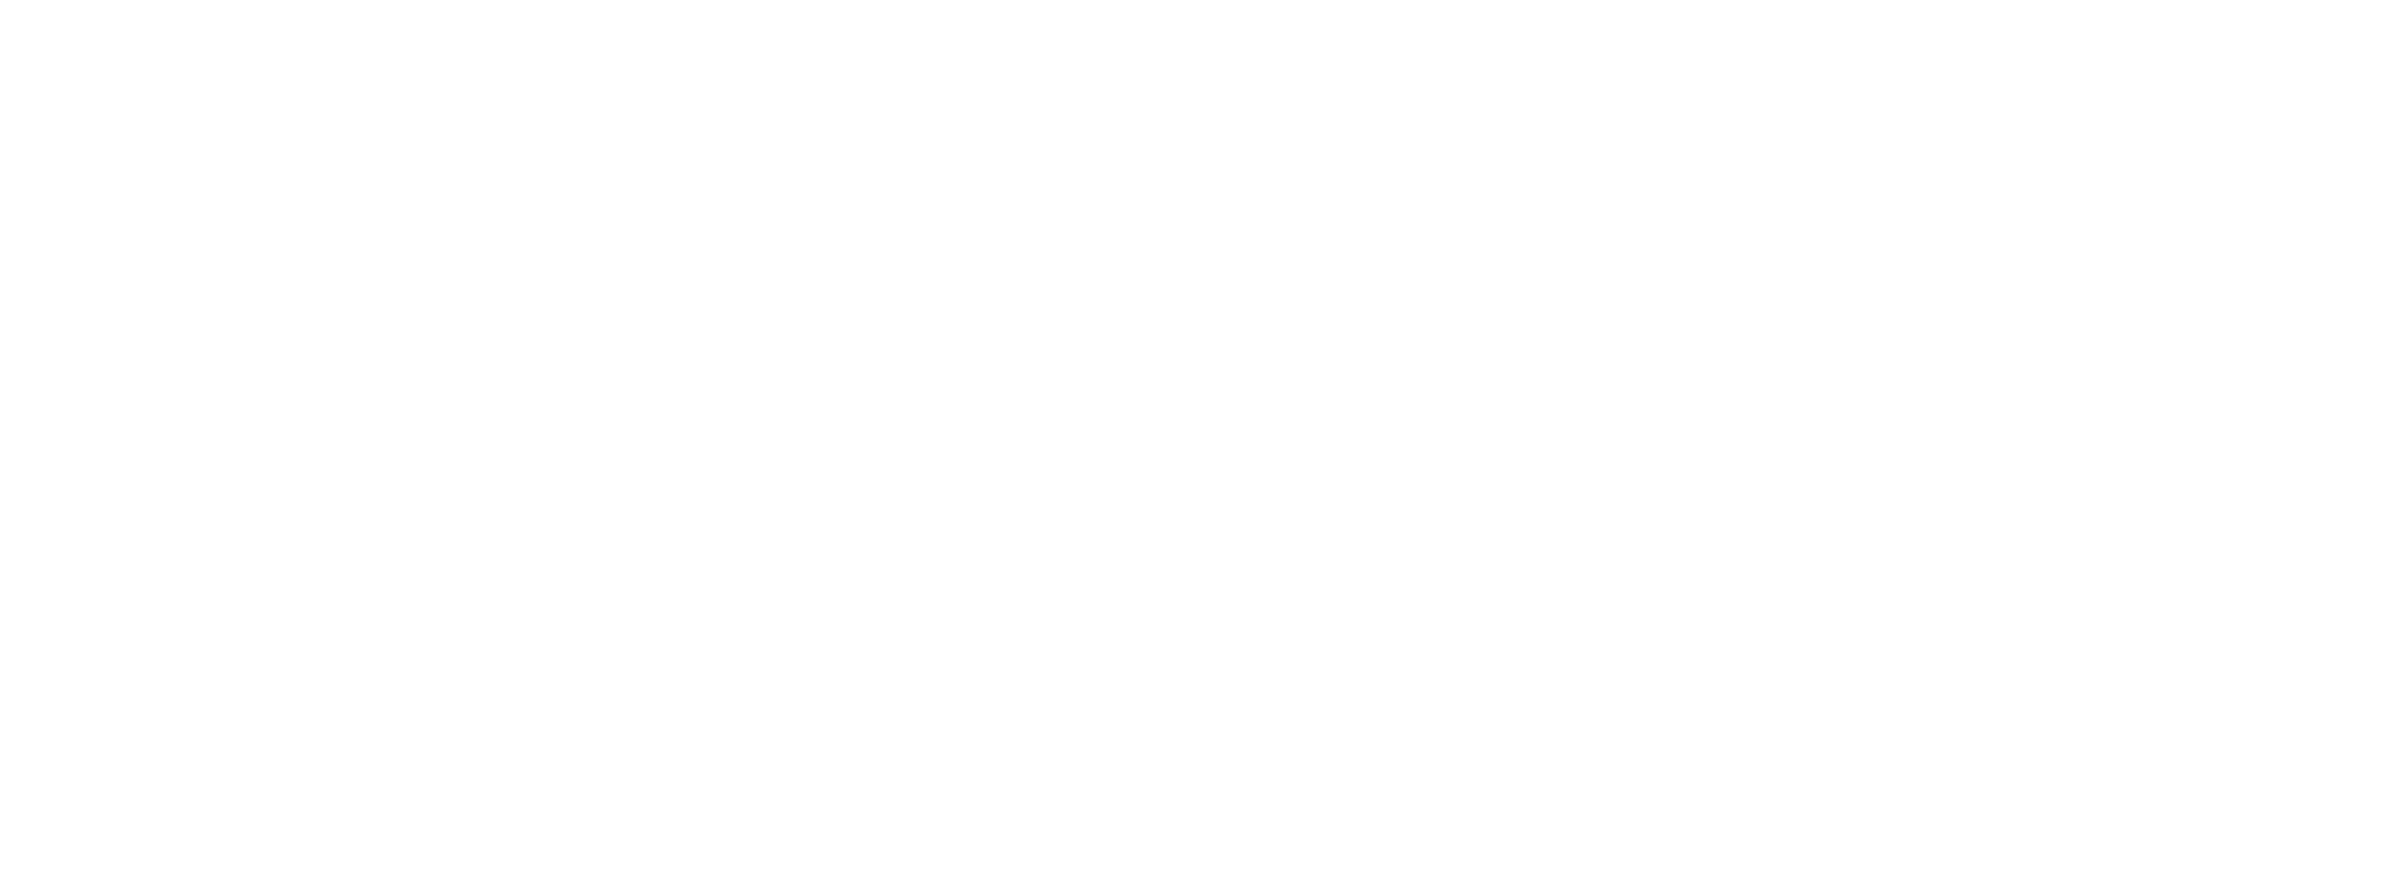 Tinder Logo - Tinder Logo PNG Transparent & SVG Vector - Freebie Supply